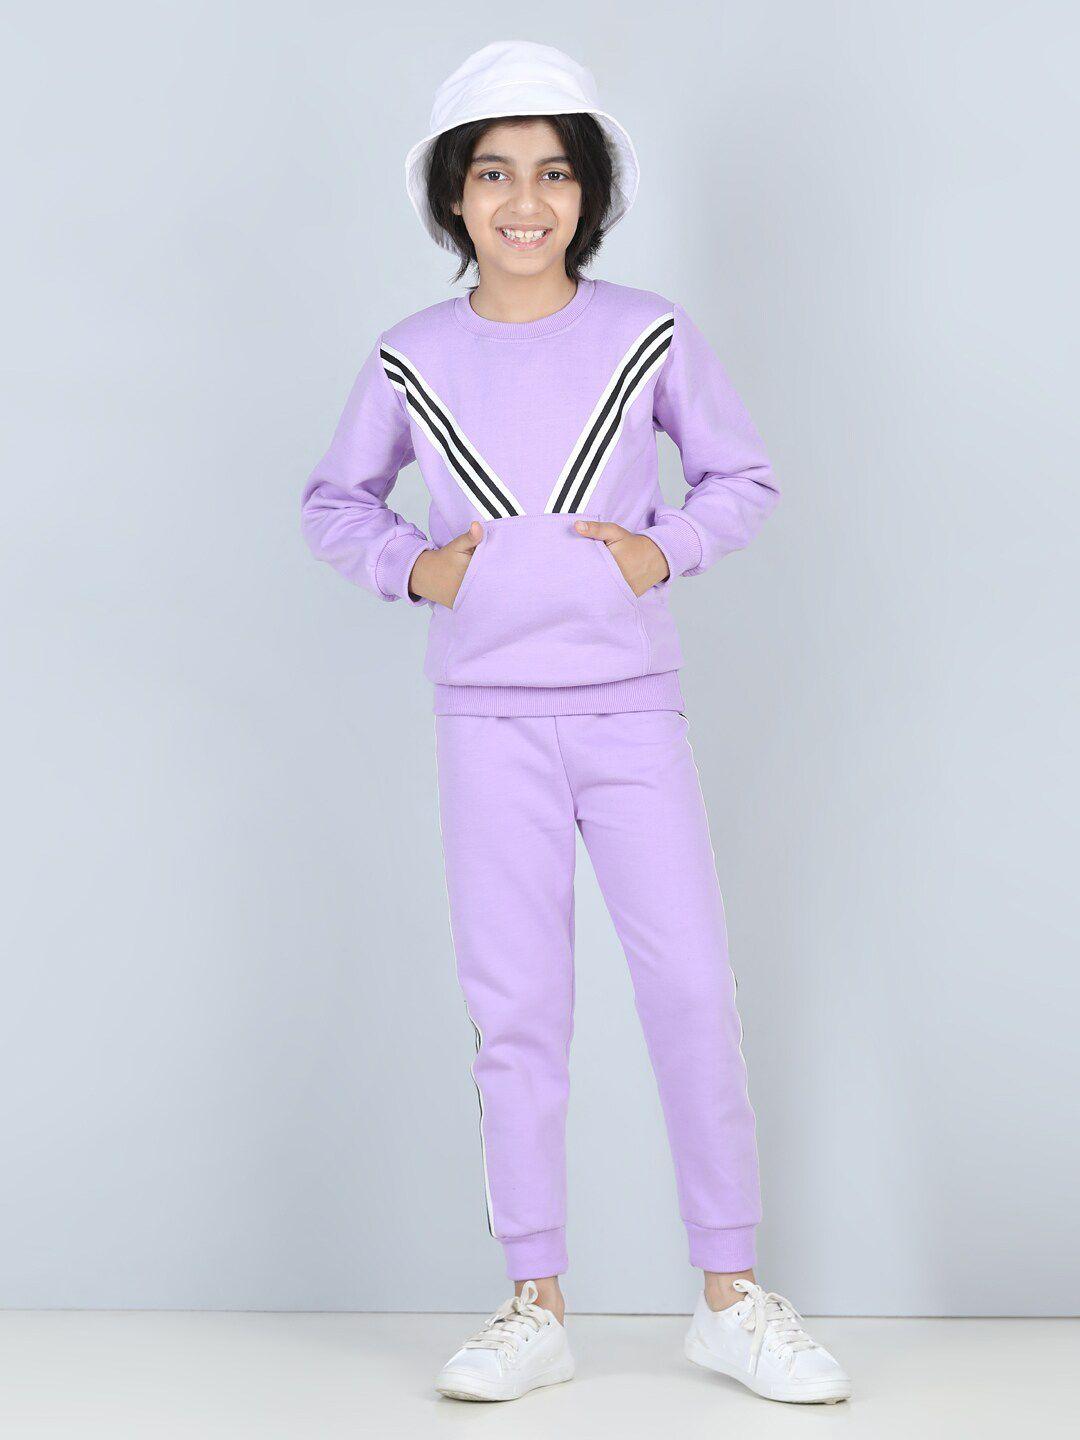 cutiekins boys purple & black striped shirt with pyjamas